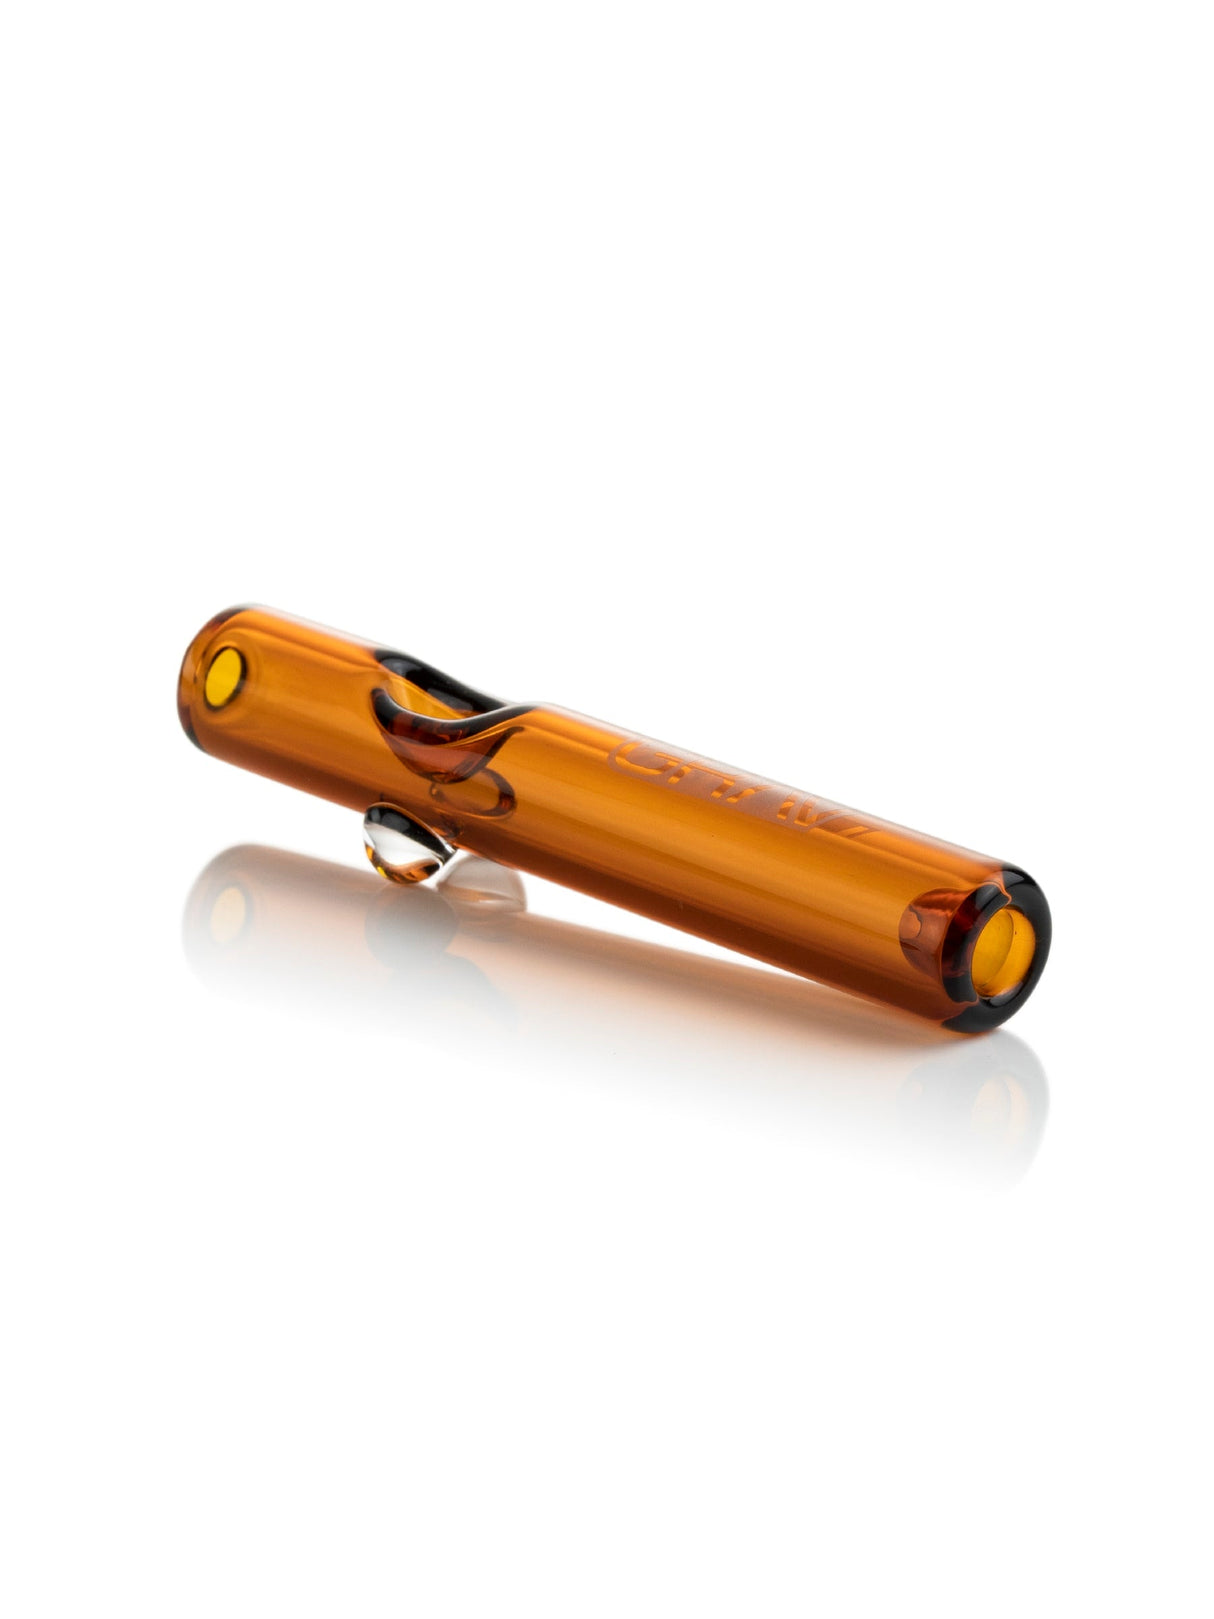 GRAV Mini Steamroller 5'' in Amber, sleek borosilicate glass hand pipe, side view on white background